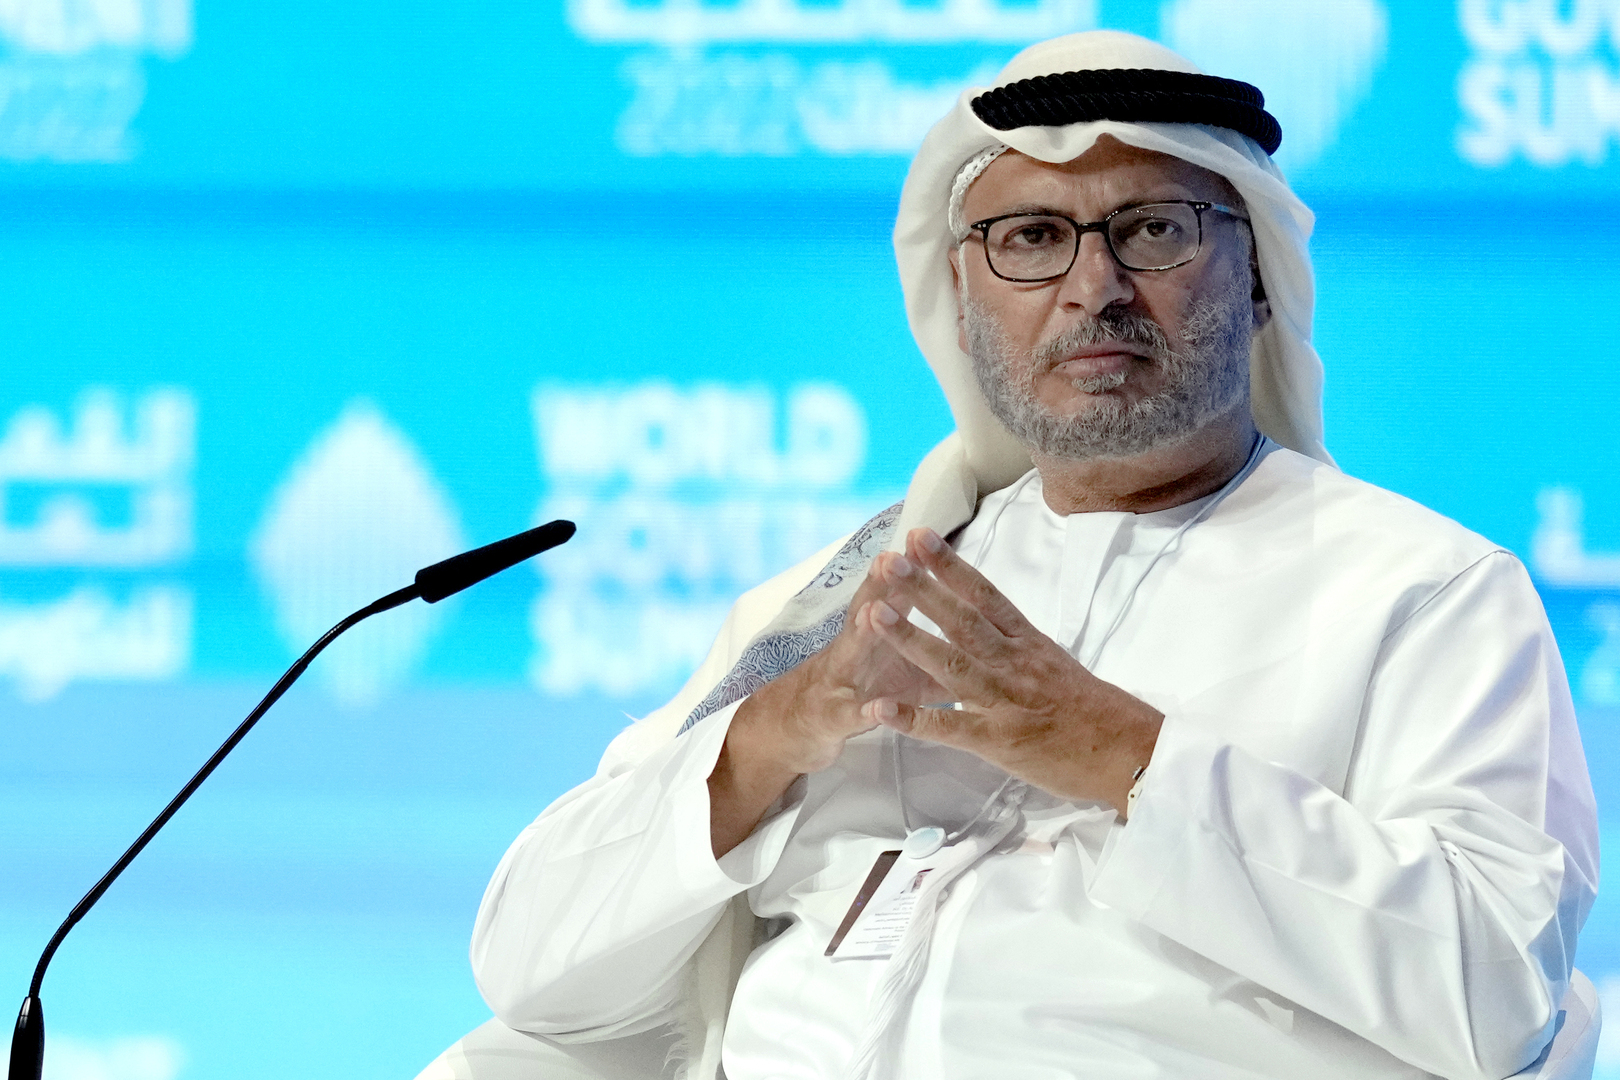 أنور قرقاش المستشار الدبلوماسي لرئيس الإمارات